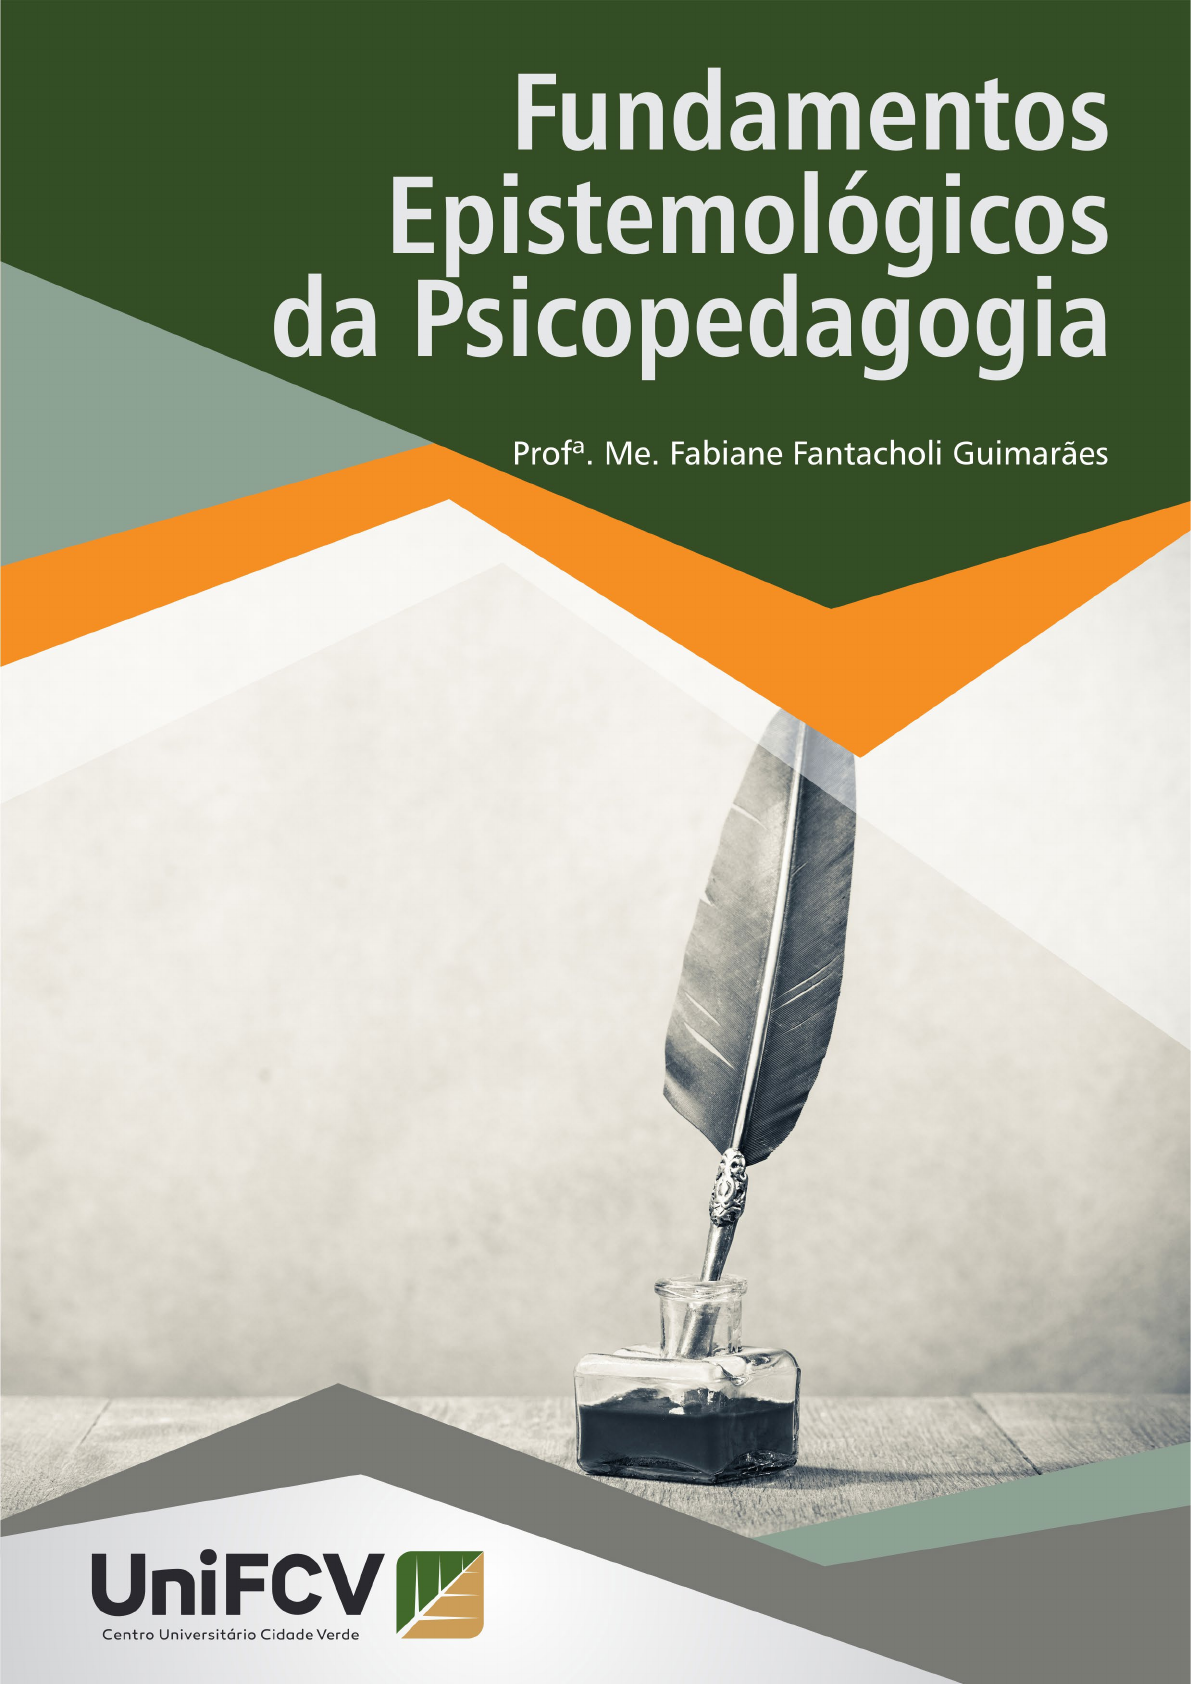 Livro: Psicopedagogia - Beatriz Judith Lima Scoz e Outros